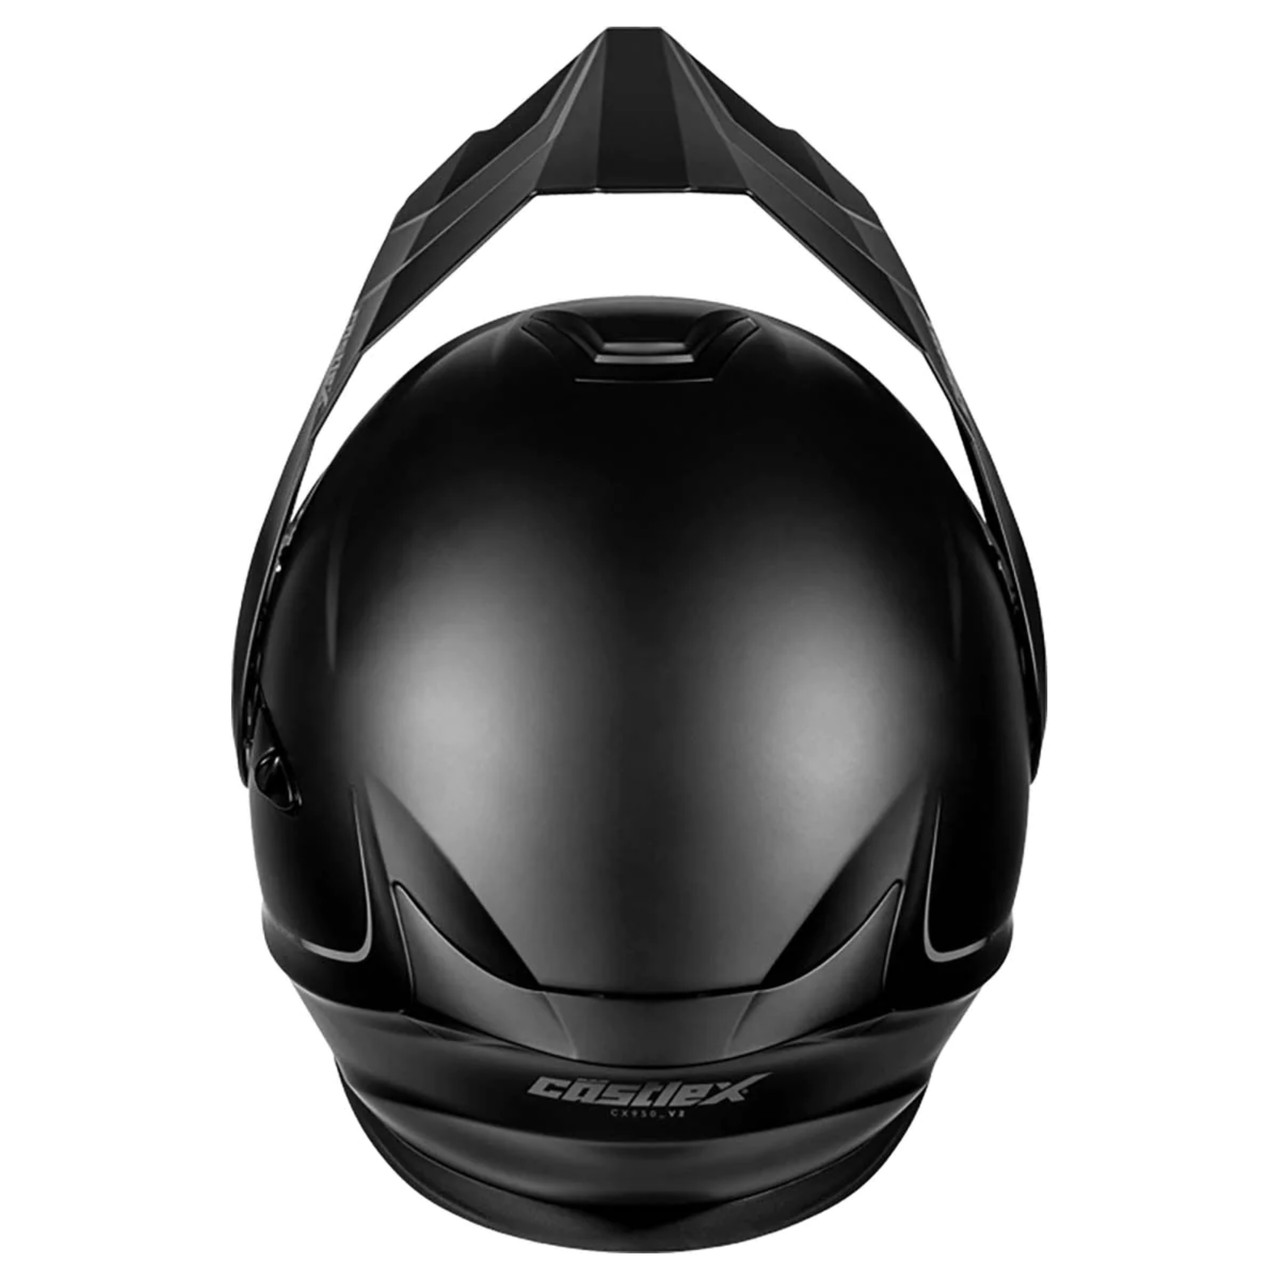 Castle X New Large Matte Black Electric CX950V2 Helmet, 45-22086